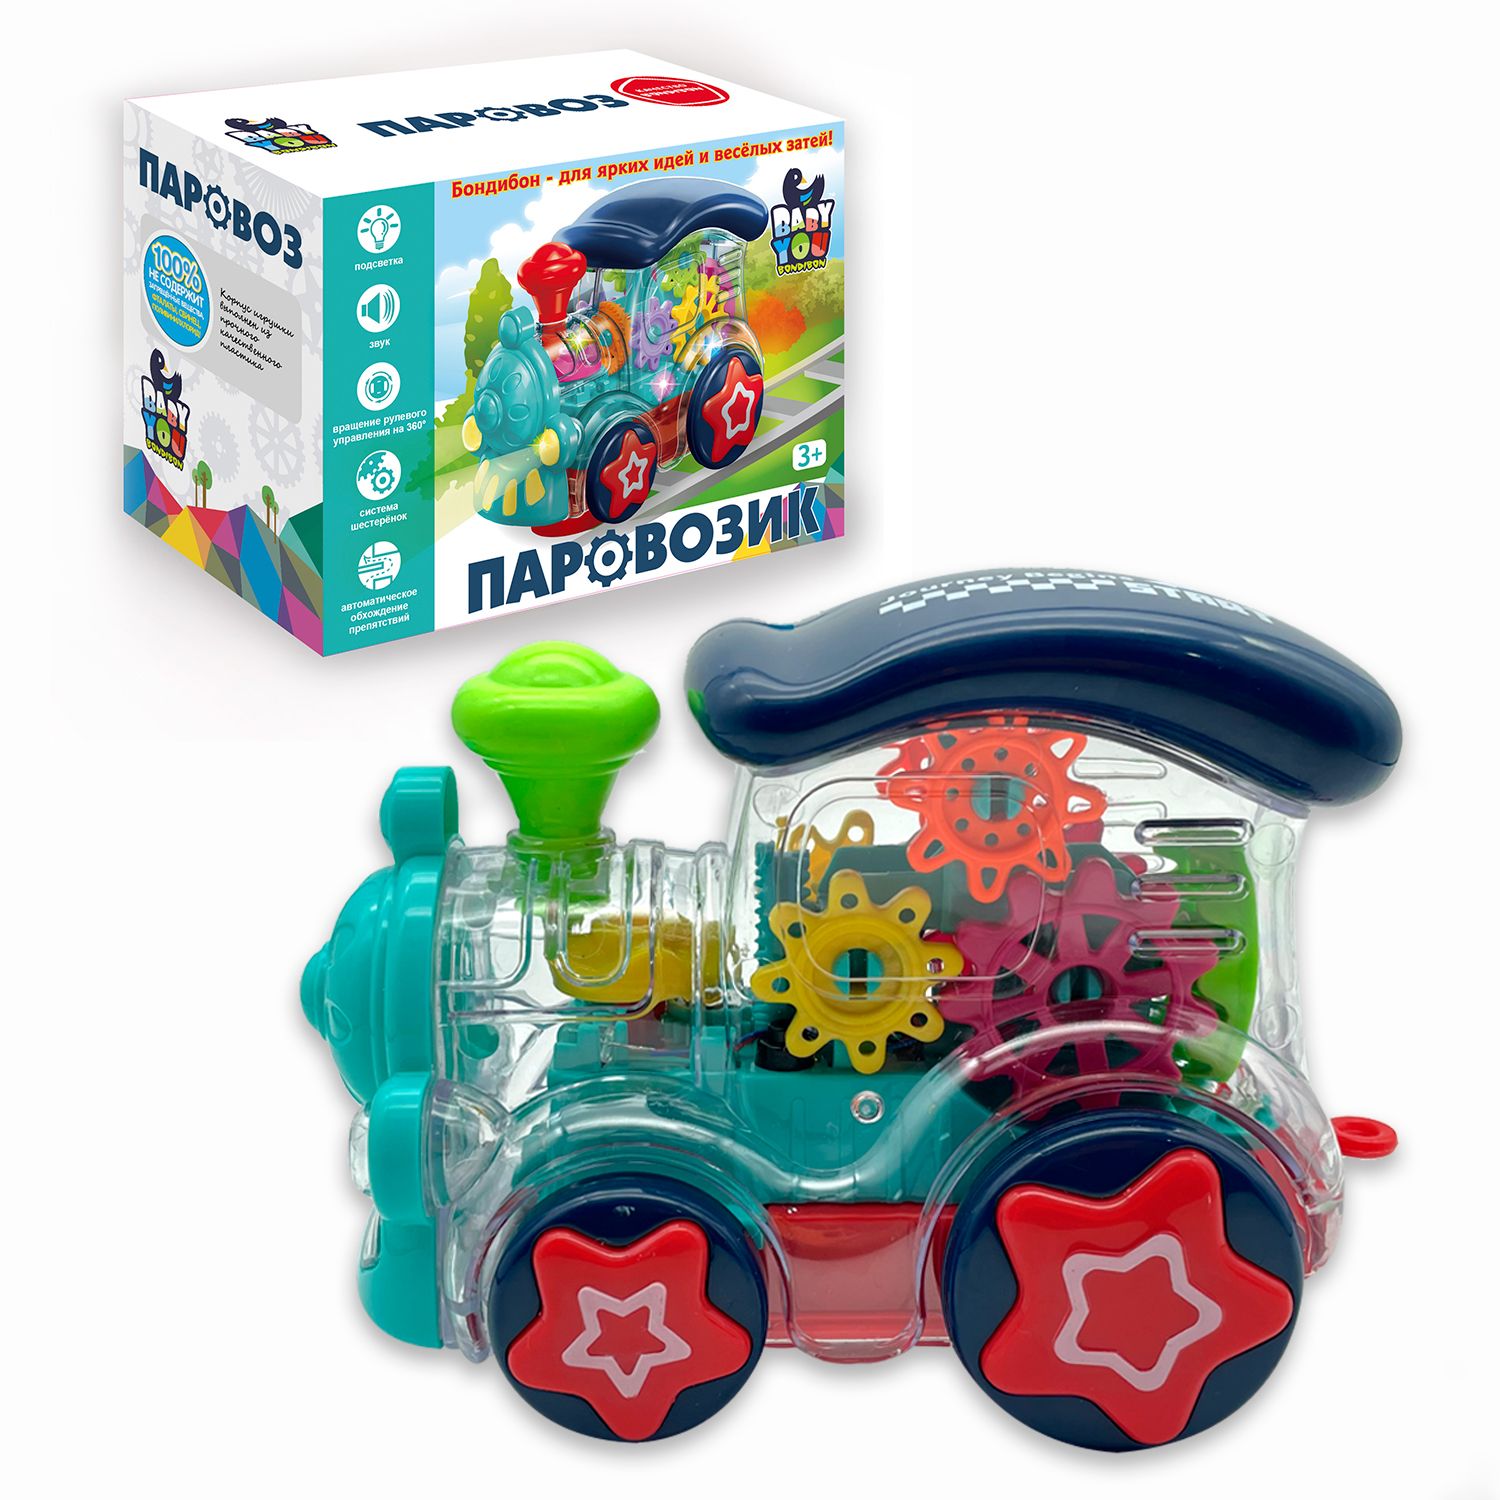 Музыкальная игрушка BONDIBON Паровозик с шестеренками со световыми эффектами и прозрачным корпусом серия Baby You - фото 1